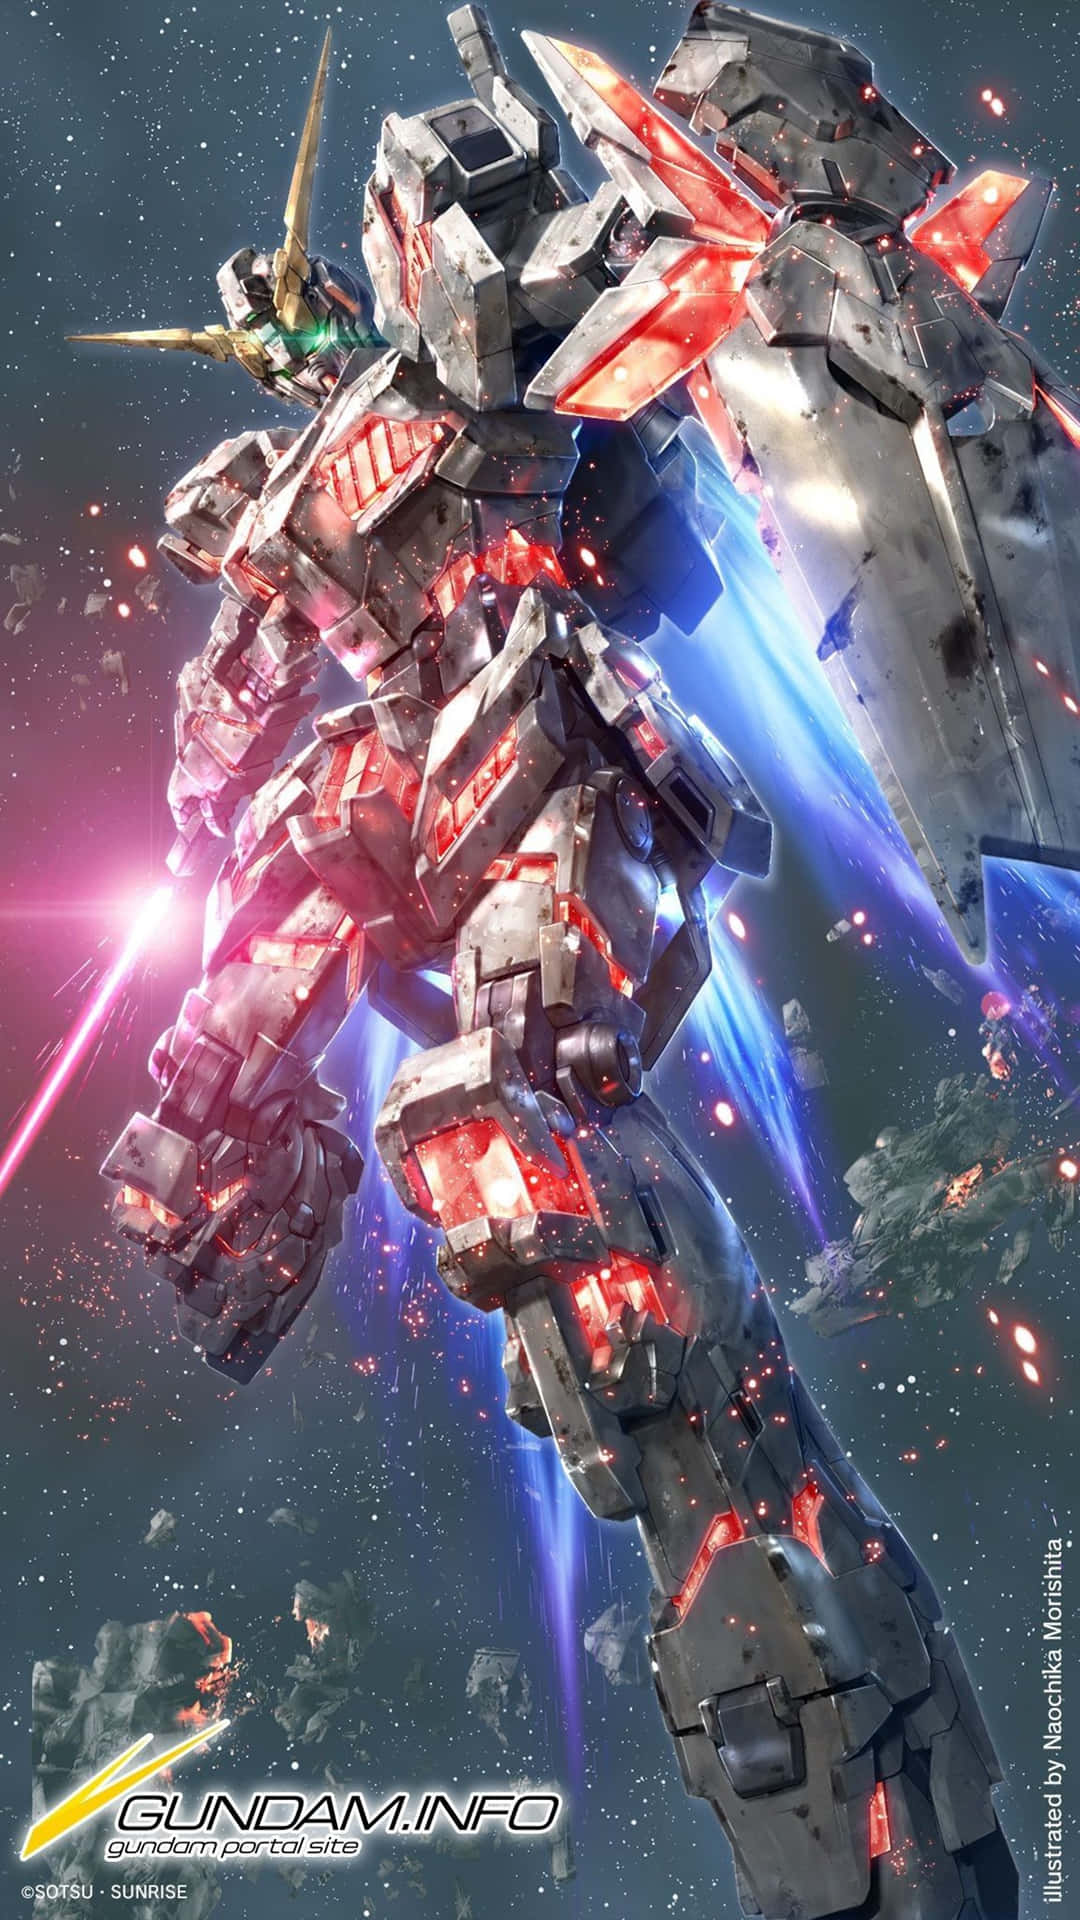 Gördig Redo Att Uppleva Kraften Och Kreativiteten Av Gundam 4k! Wallpaper